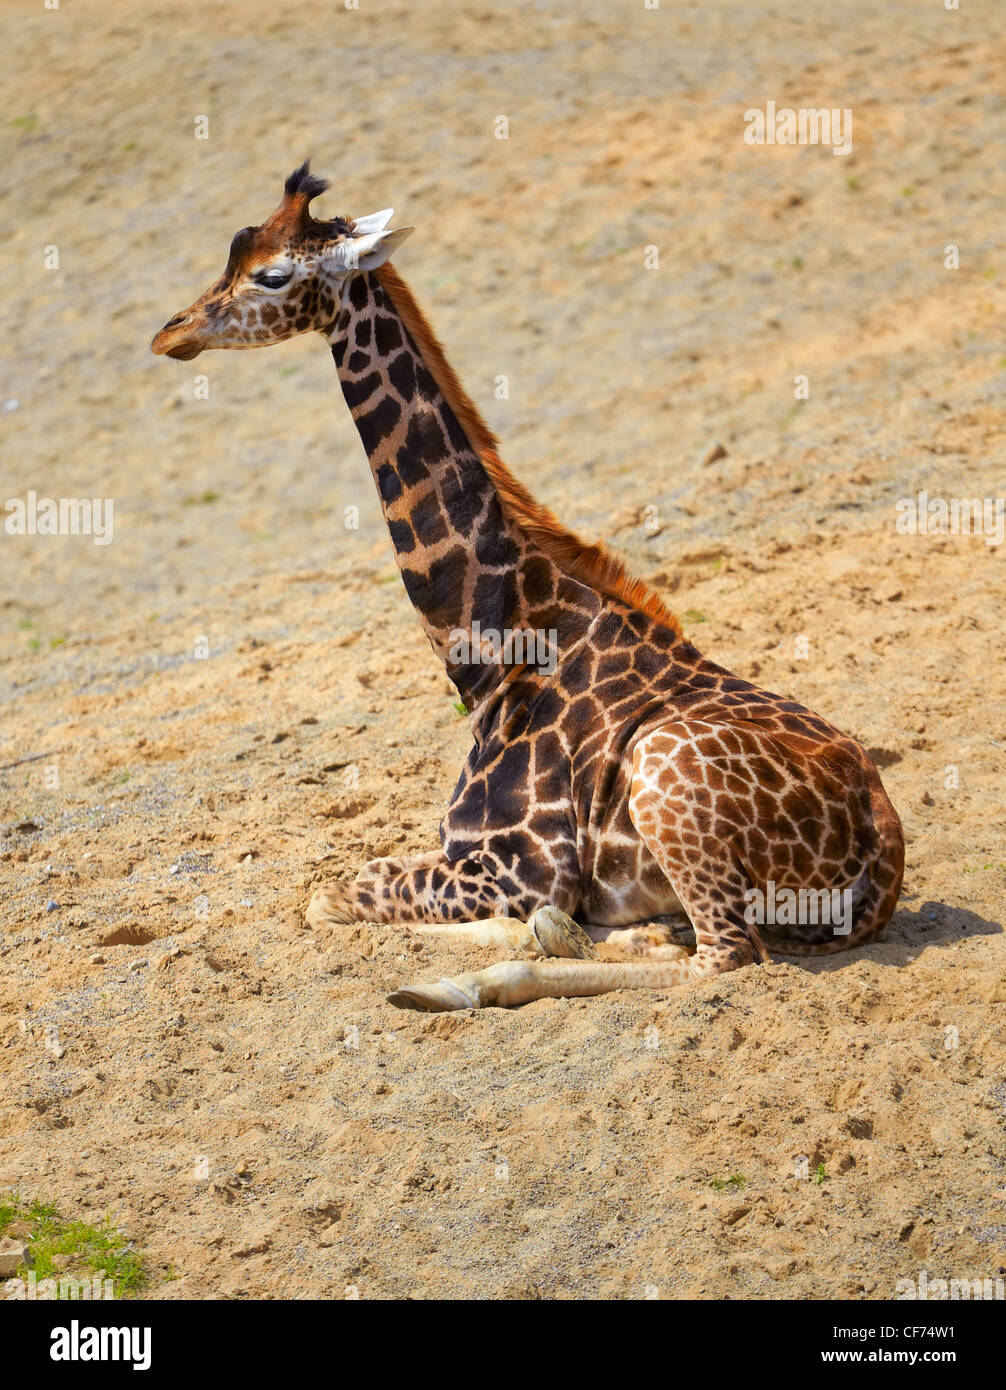 Young giraffe (Giraffa camelopardalis) resting under the summer sun. Stock Photo